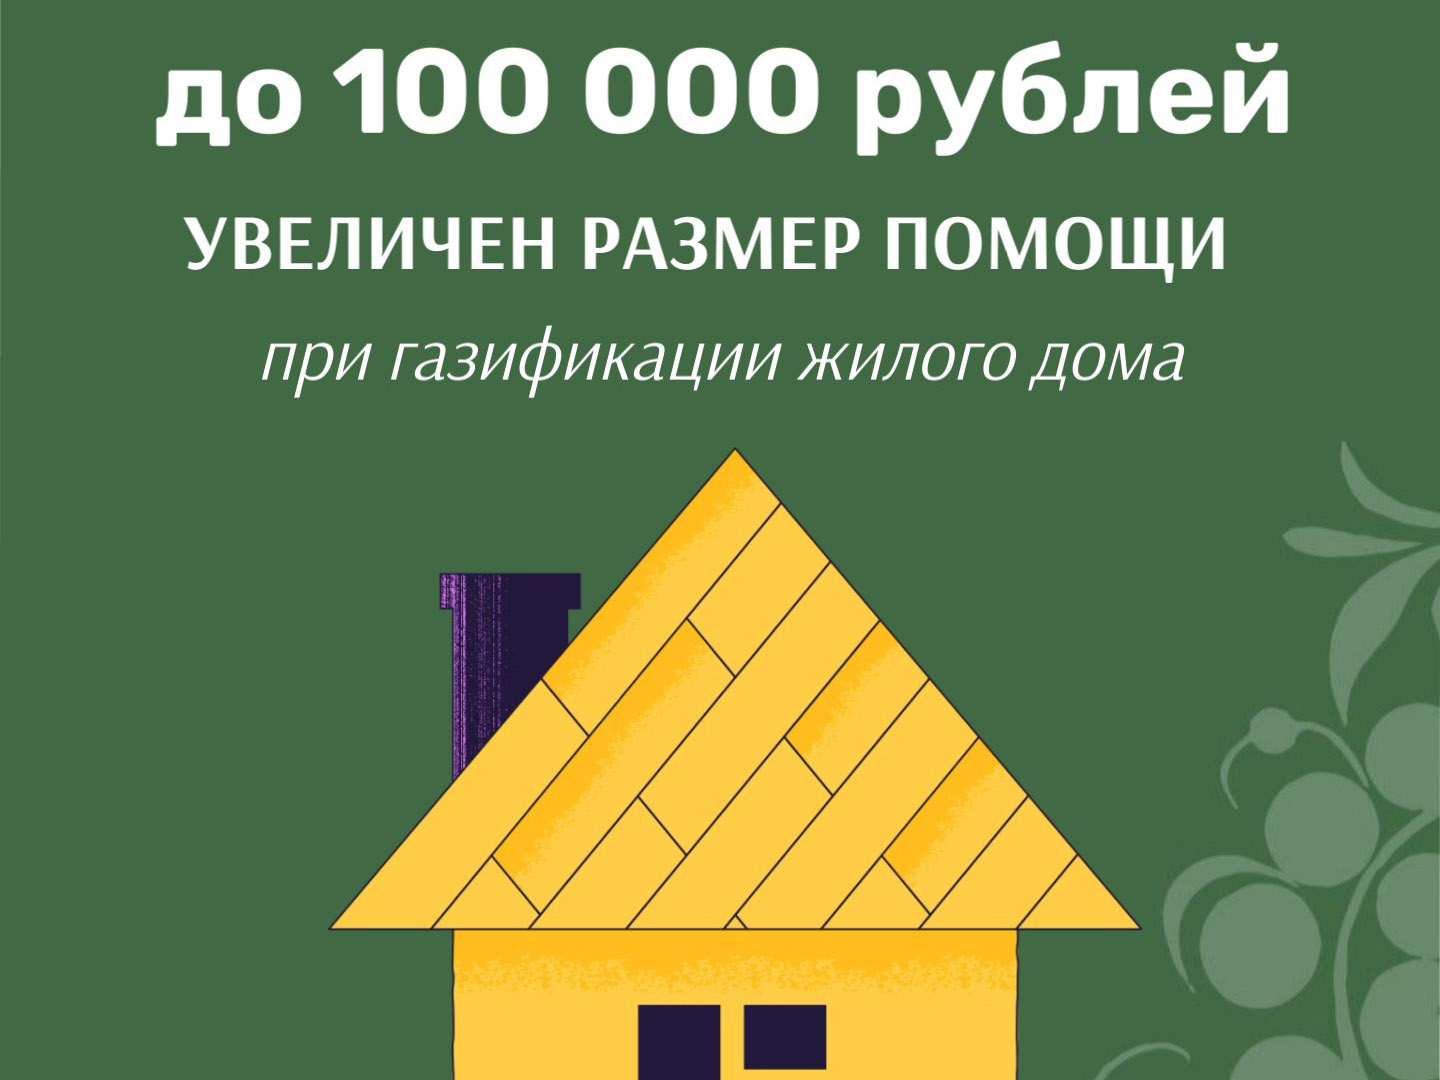 Размер материальной поддержки для вологжан при газификации жилого дома увеличен до 100 тысяч рублей.